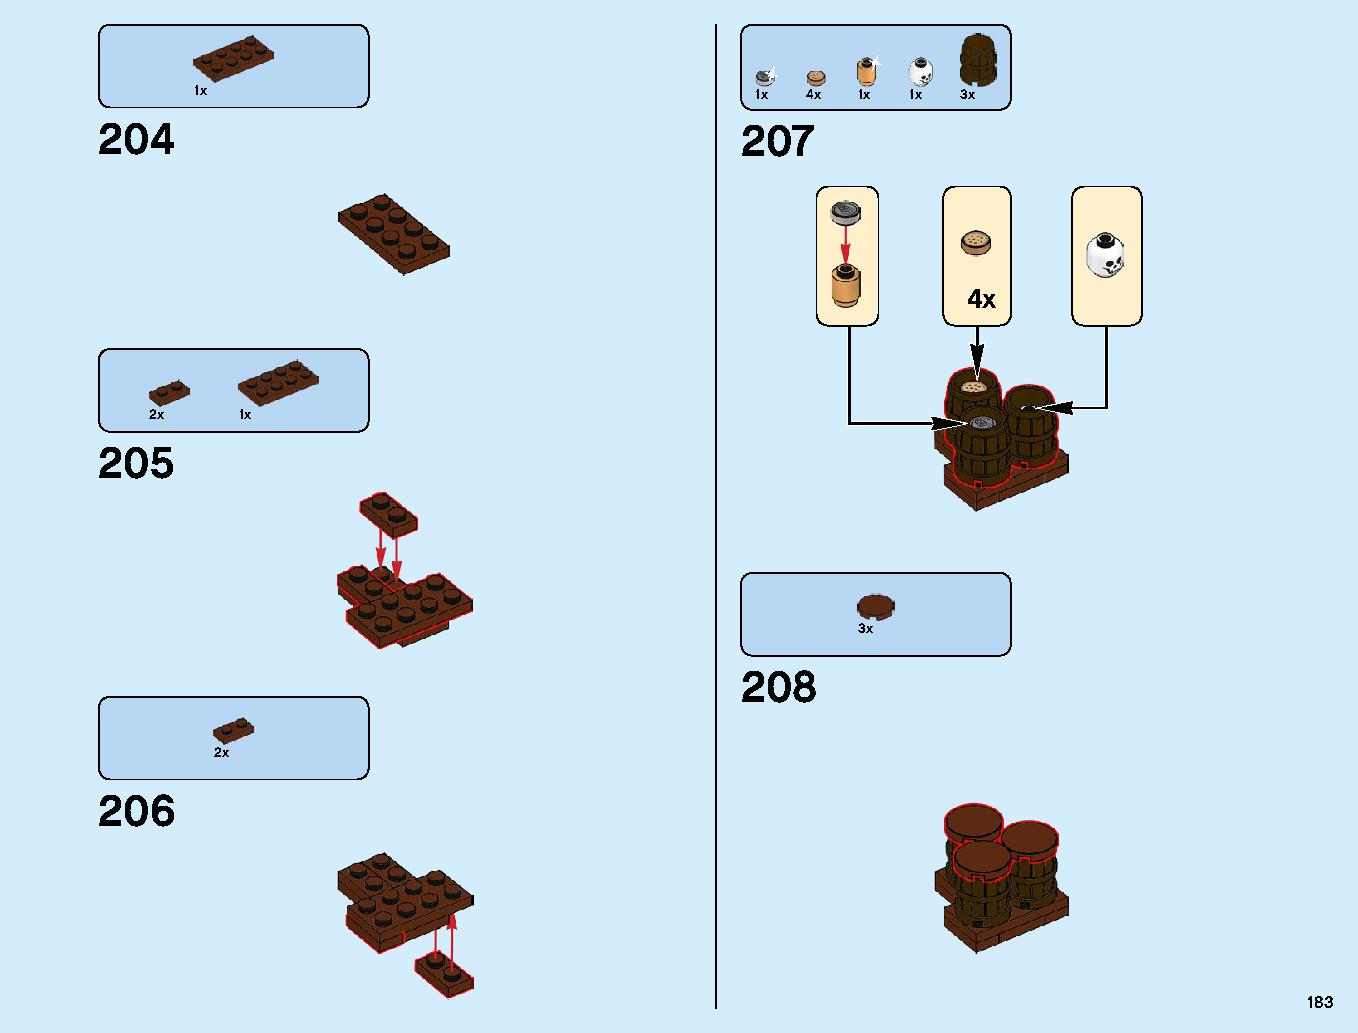 ニンジャゴーシティ・ポートパーク 70657 レゴの商品情報 レゴの説明書・組立方法 183 page